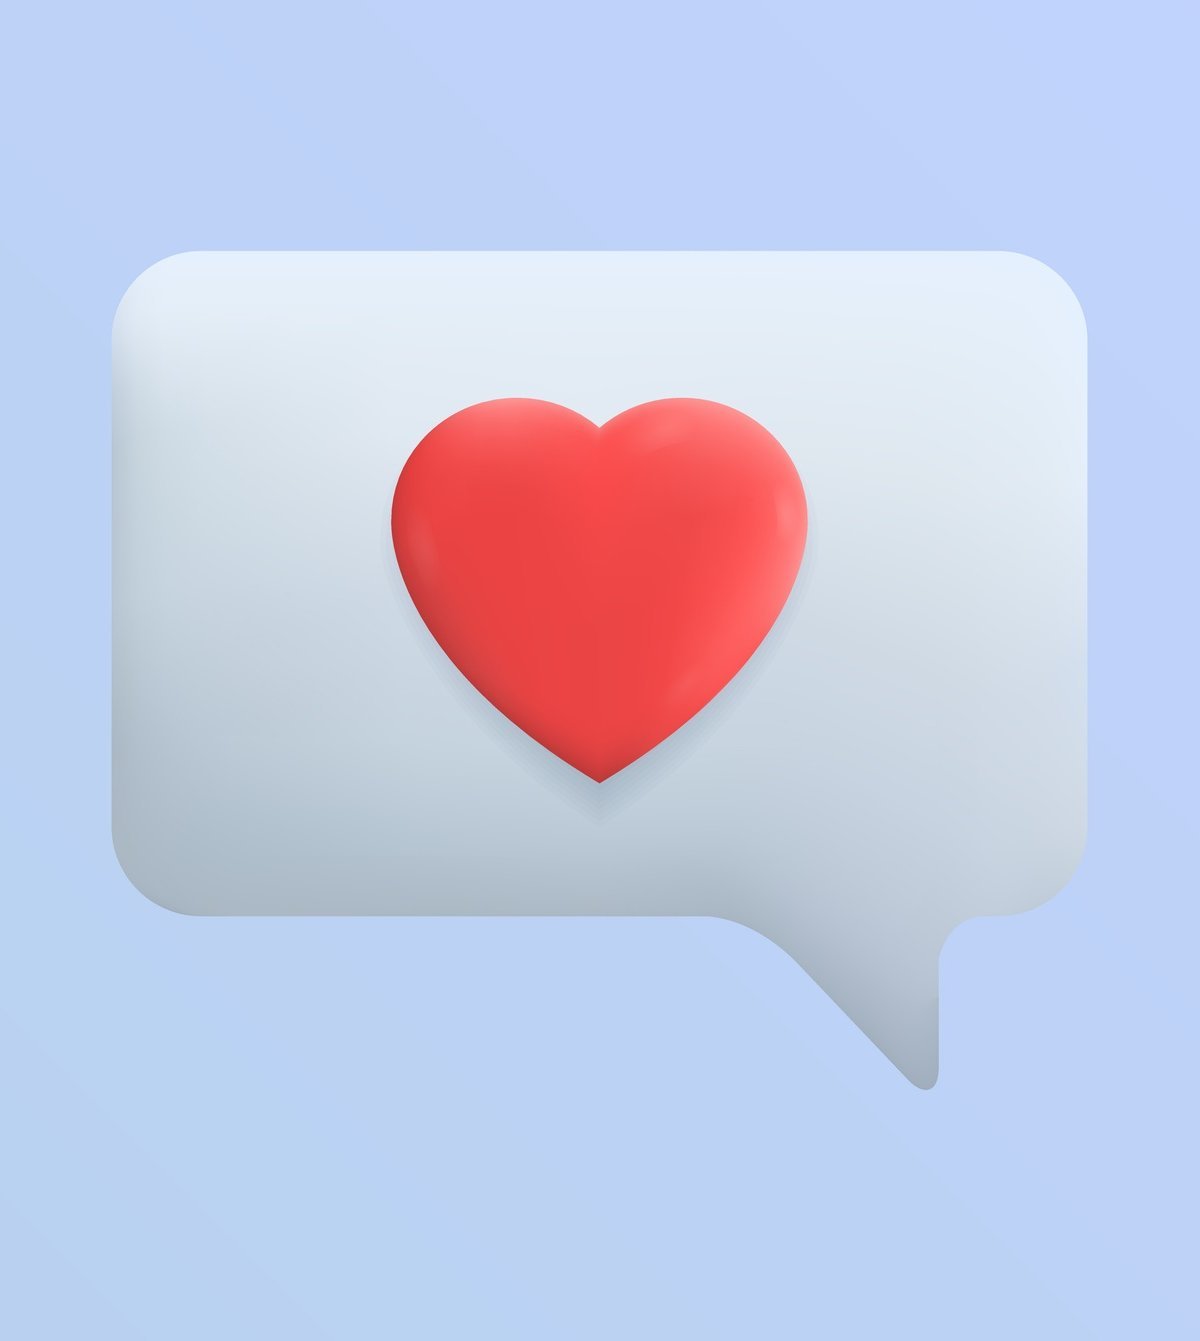 Você sabia que cada cor de coração de emoji tem um significado? Confira